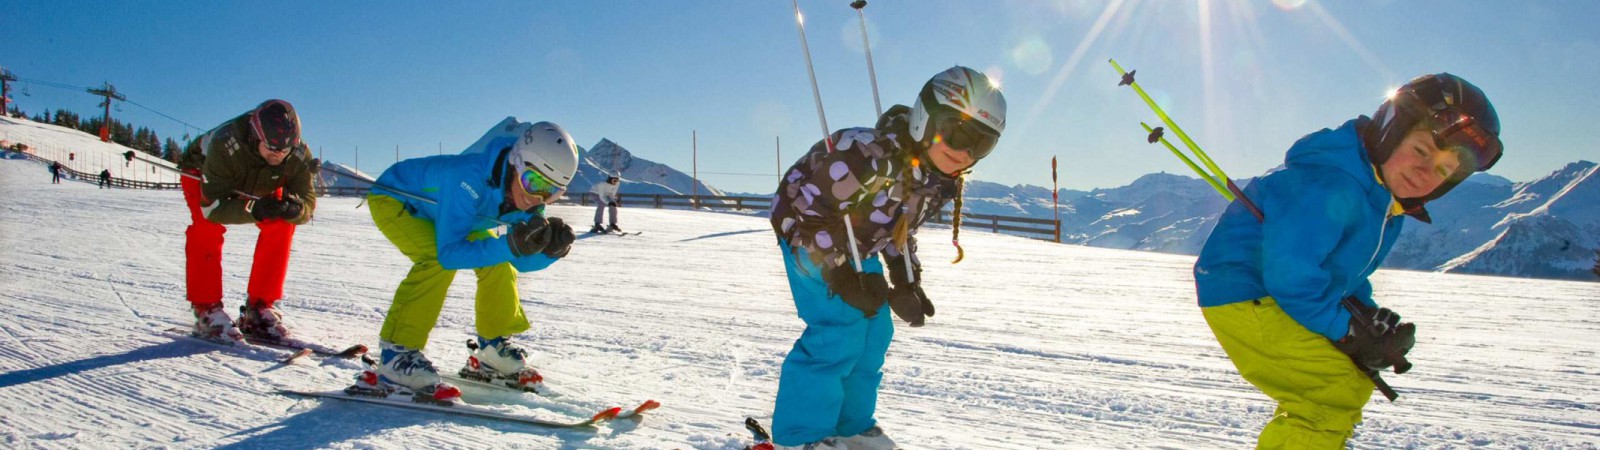 wintersport in Val Thorens